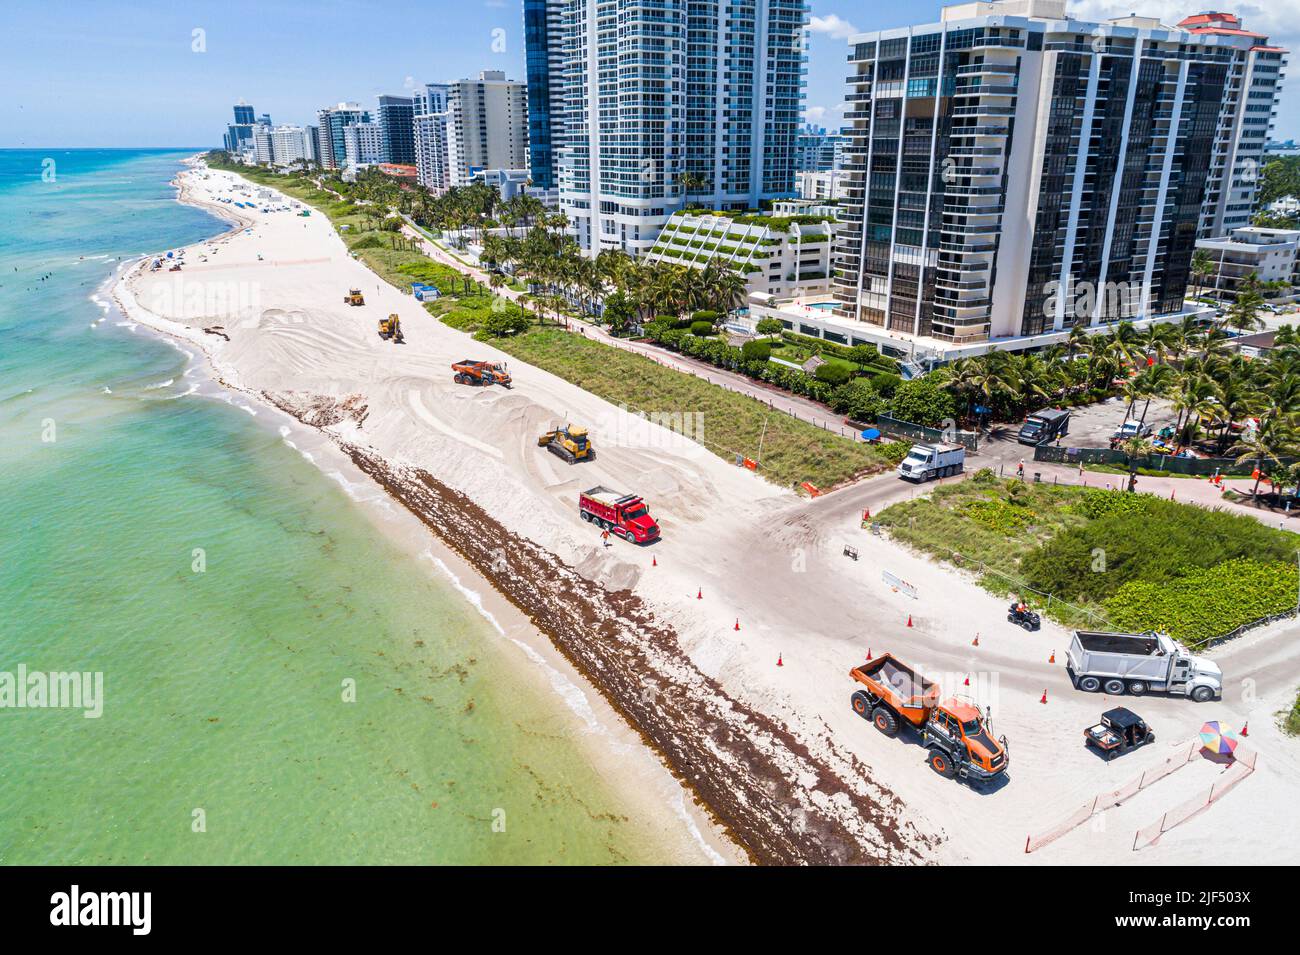 Miami Beach Florida, vista aérea desde arriba, costa del Océano Atlántico costa playa pública arena restauración restauración, aumento del nivel del mar Foto de stock